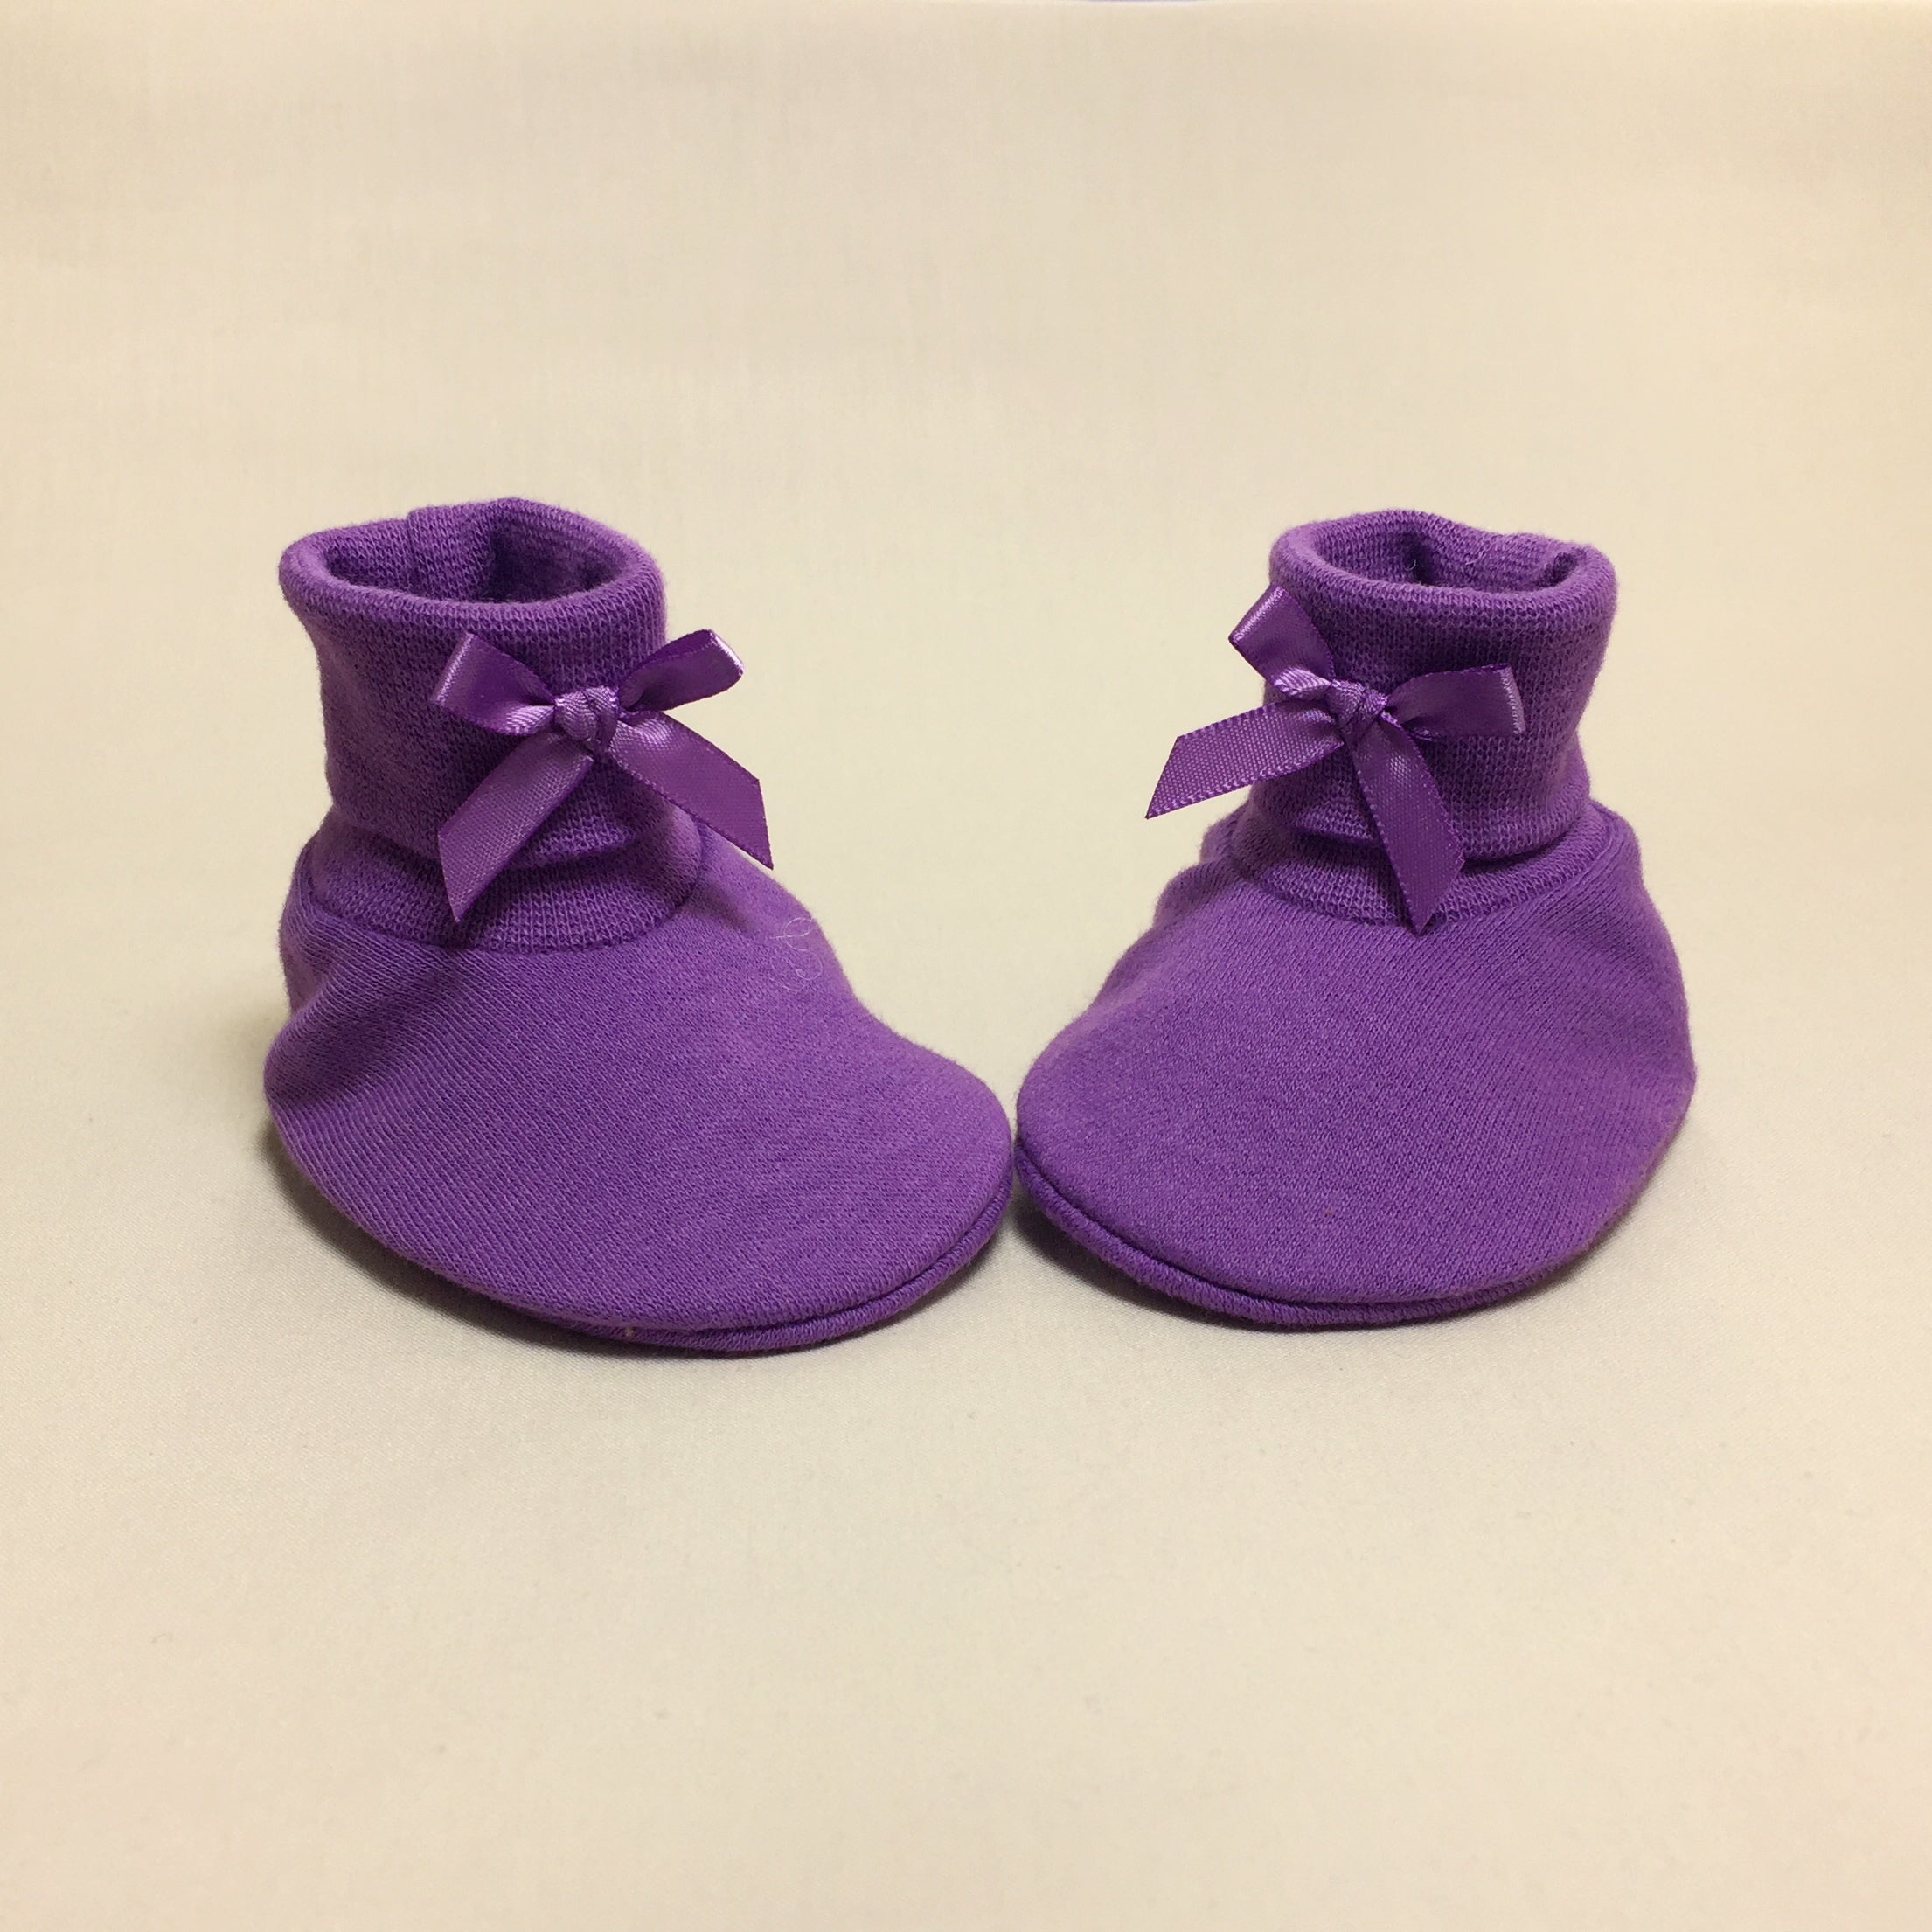 purple baby booties